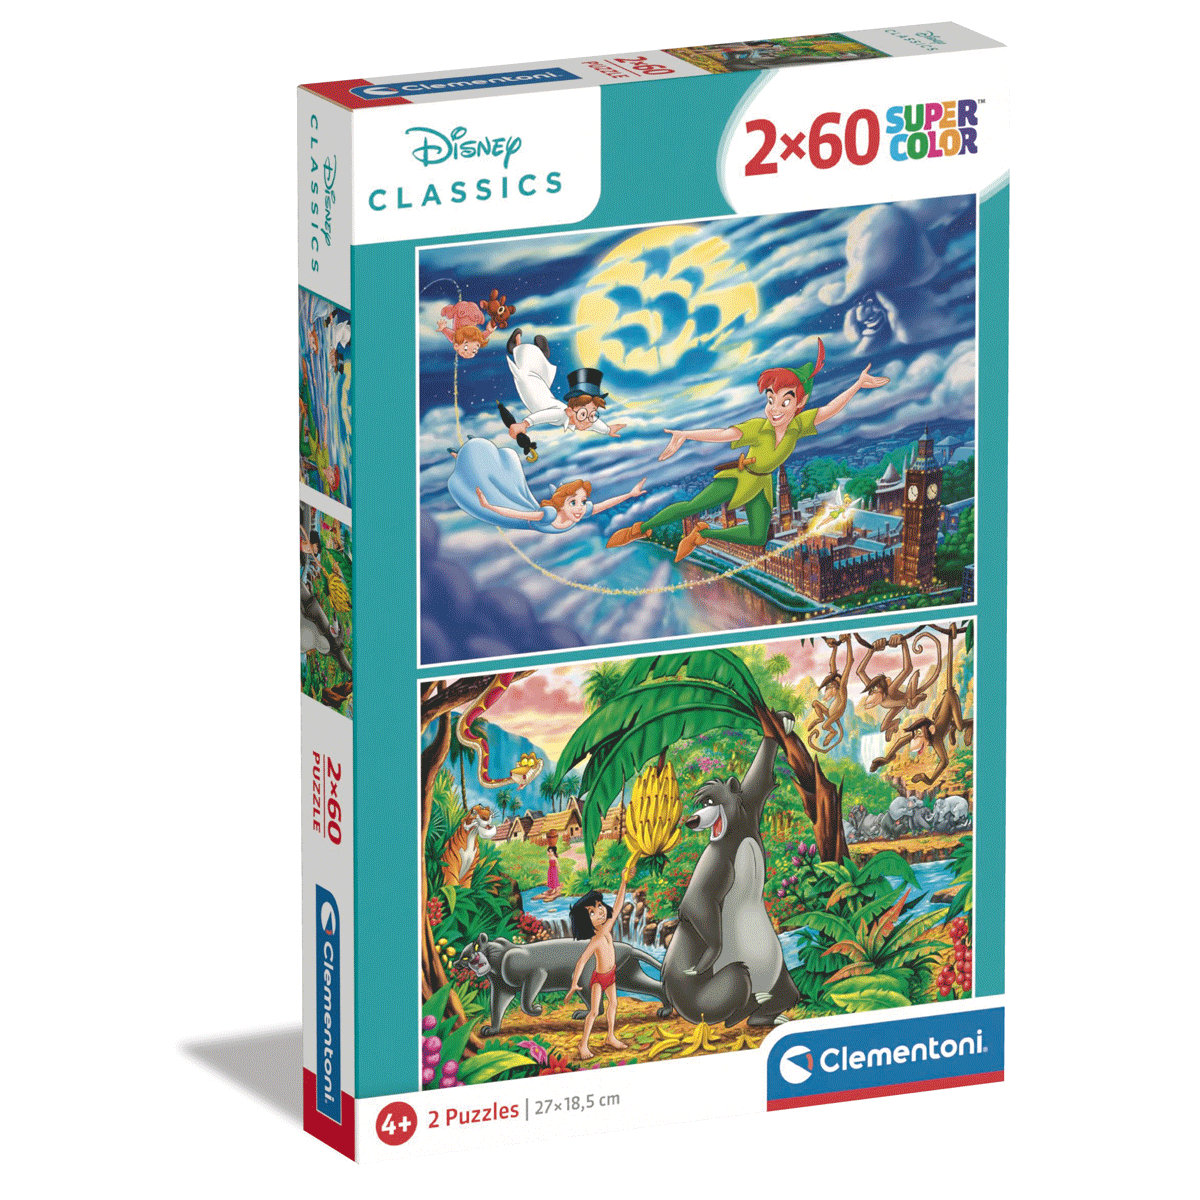 Clementoni supercolor puzzle - disney classics - 2x60 pezzi, puzzle bambini  5 anni